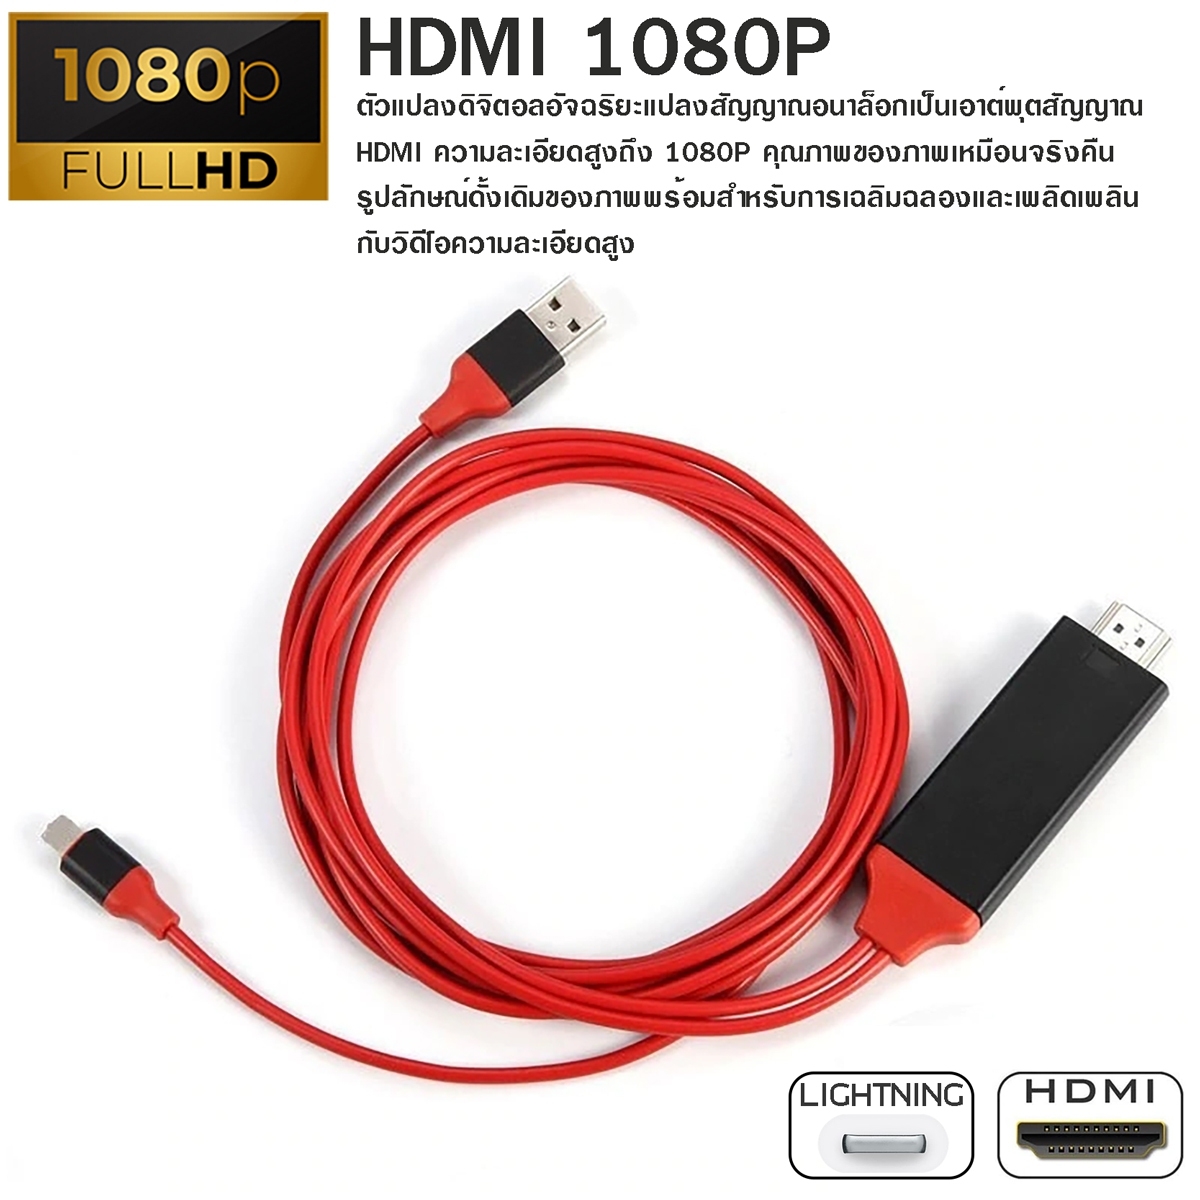 สายแปลงสัญญาณ Lightning to HDTV สายแปลง iPhone To HDMI TV มือถือ เชื่อมต่อกับทีวี 1080P / COCO-3C